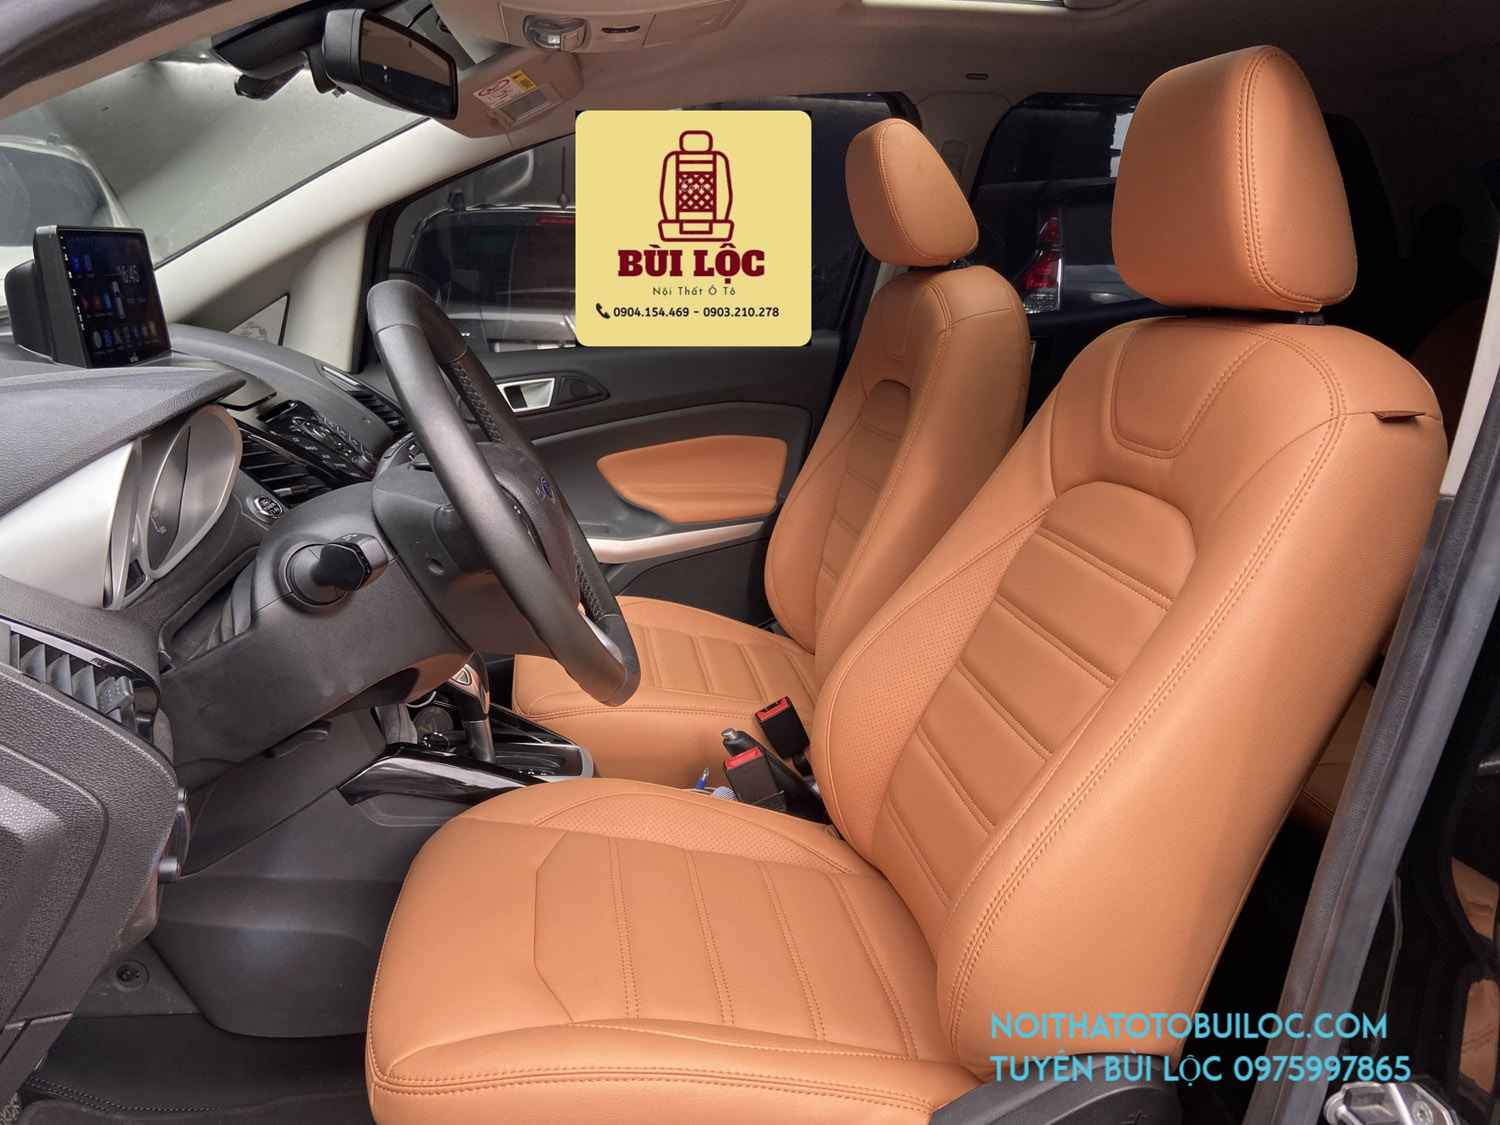 Bọc ghế da xe Ford Ecosport chất lượng tại Bùi Lộc